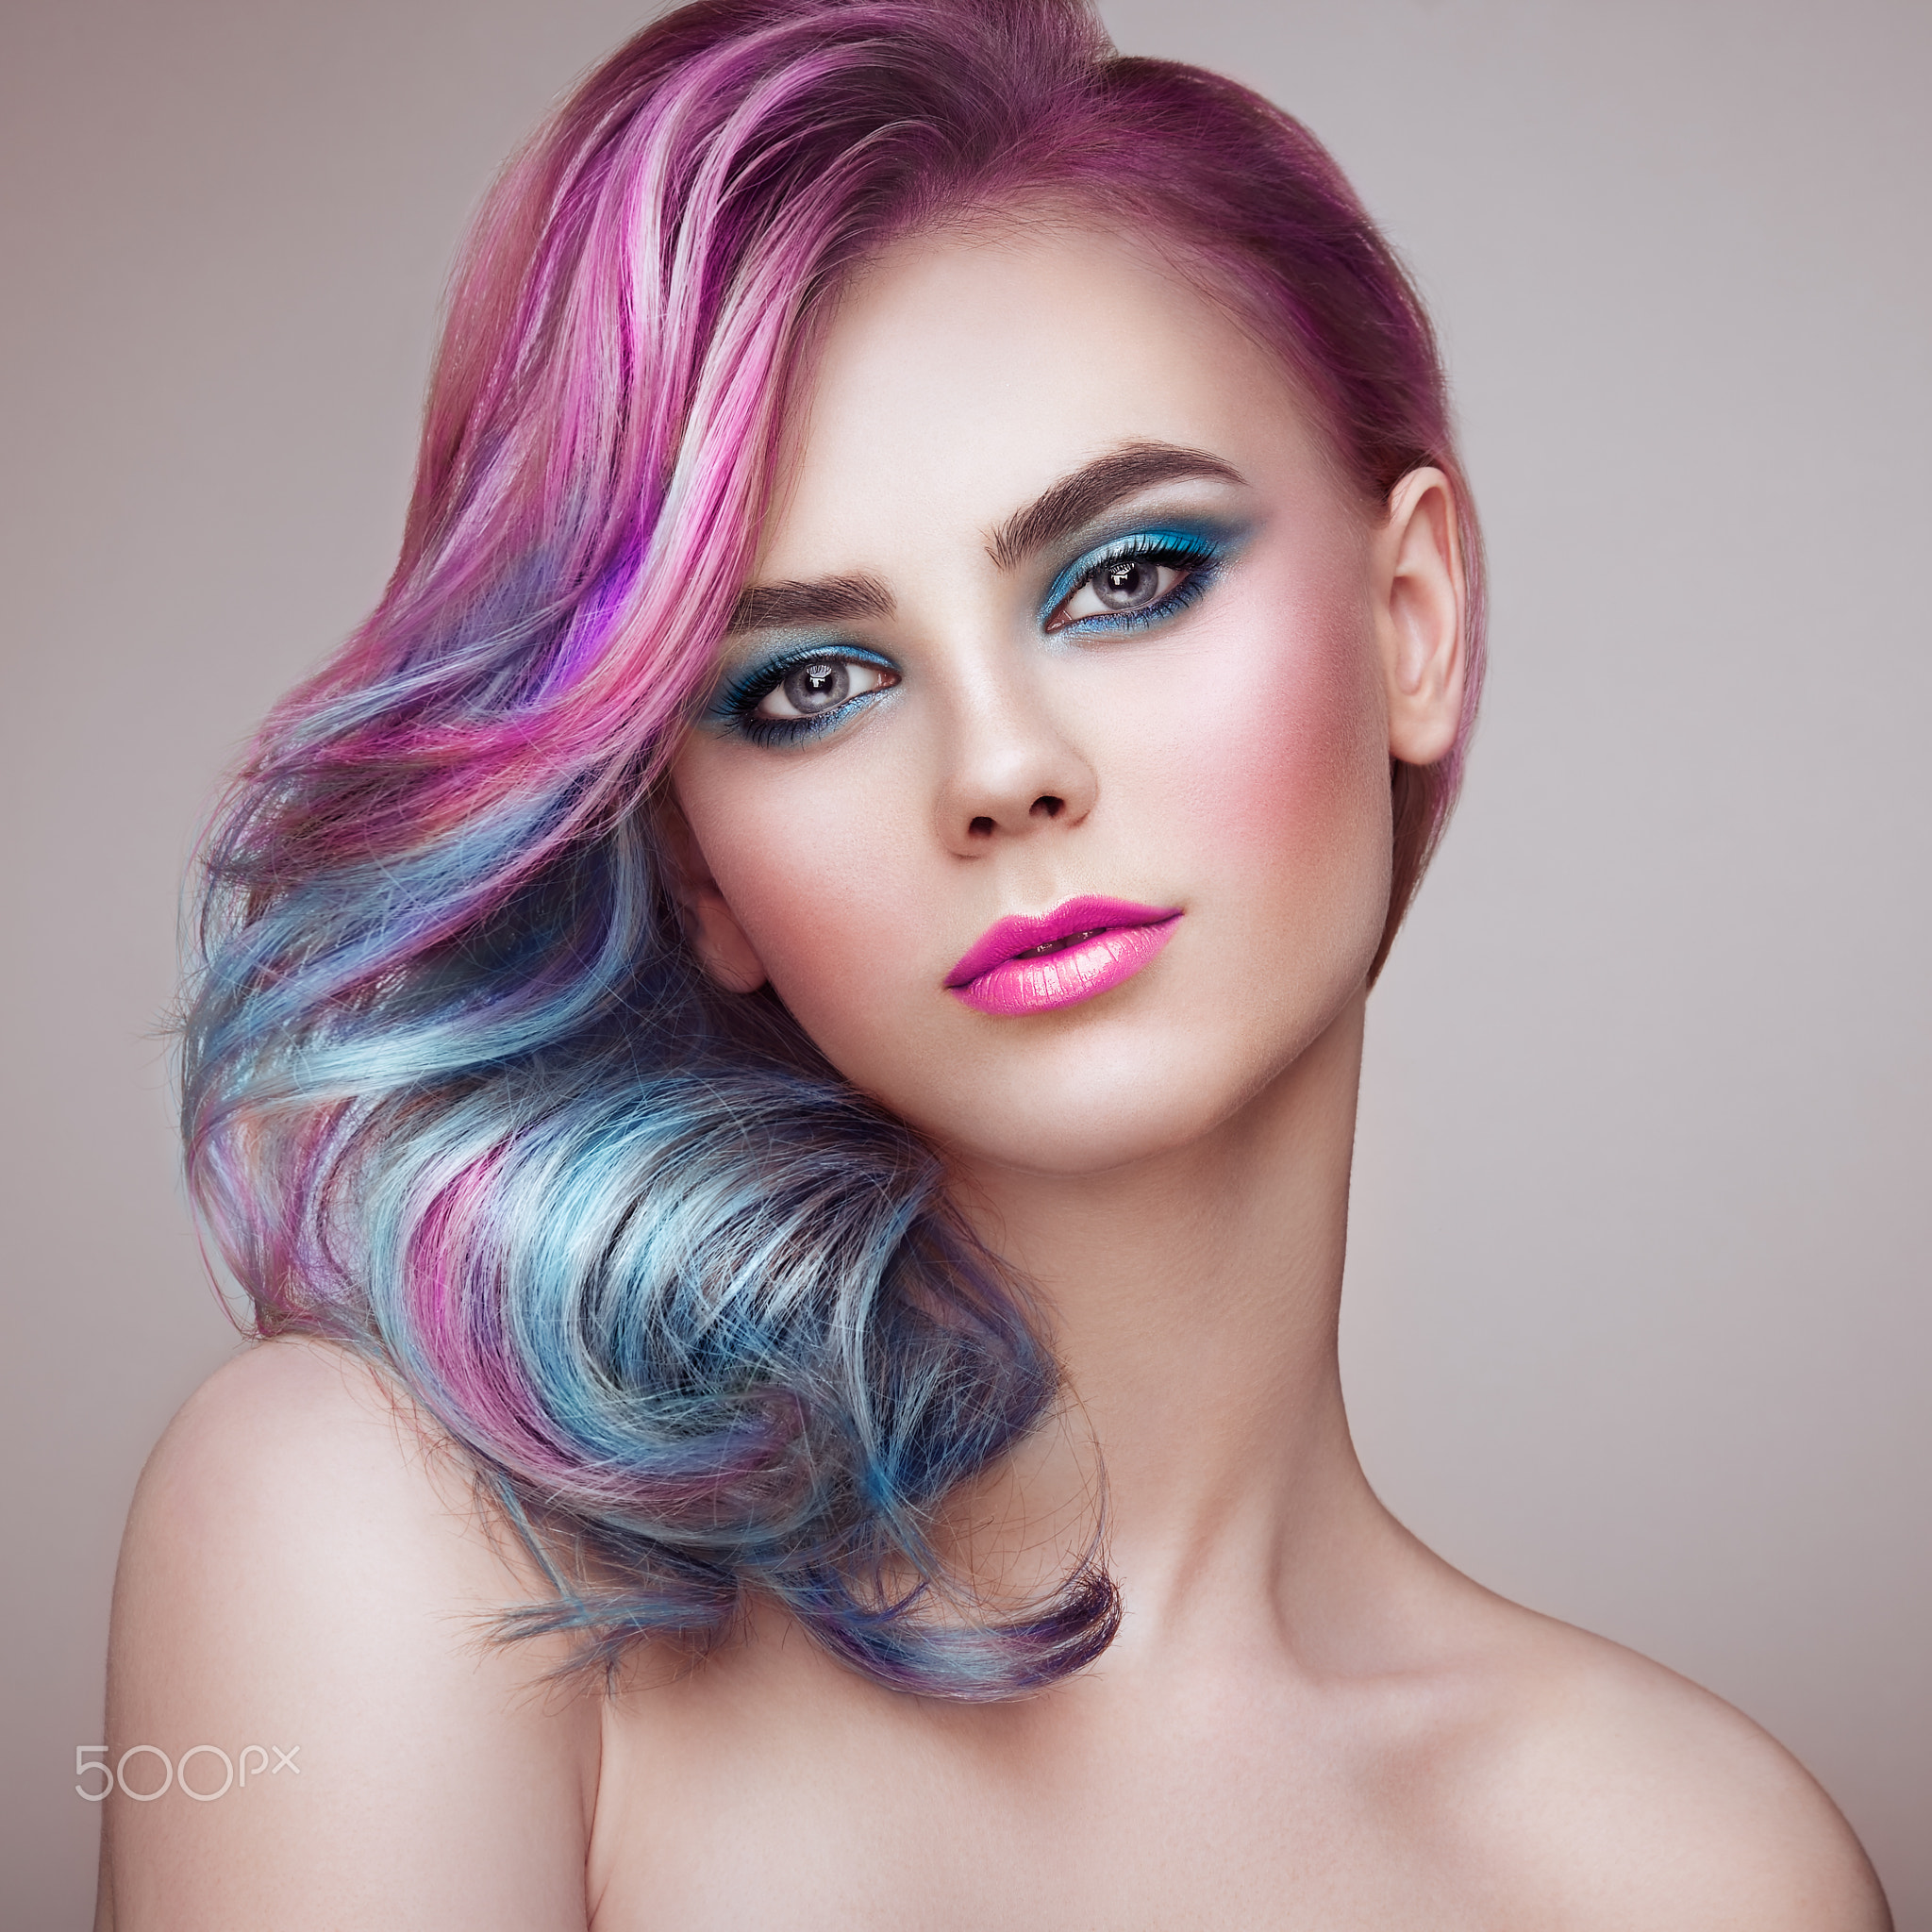 Oleg Gekman Women Portrait Glamour Makeup Eyeshadow Eyeliner Lipstick Blush Looking At Viewer Pink H 2048x2048